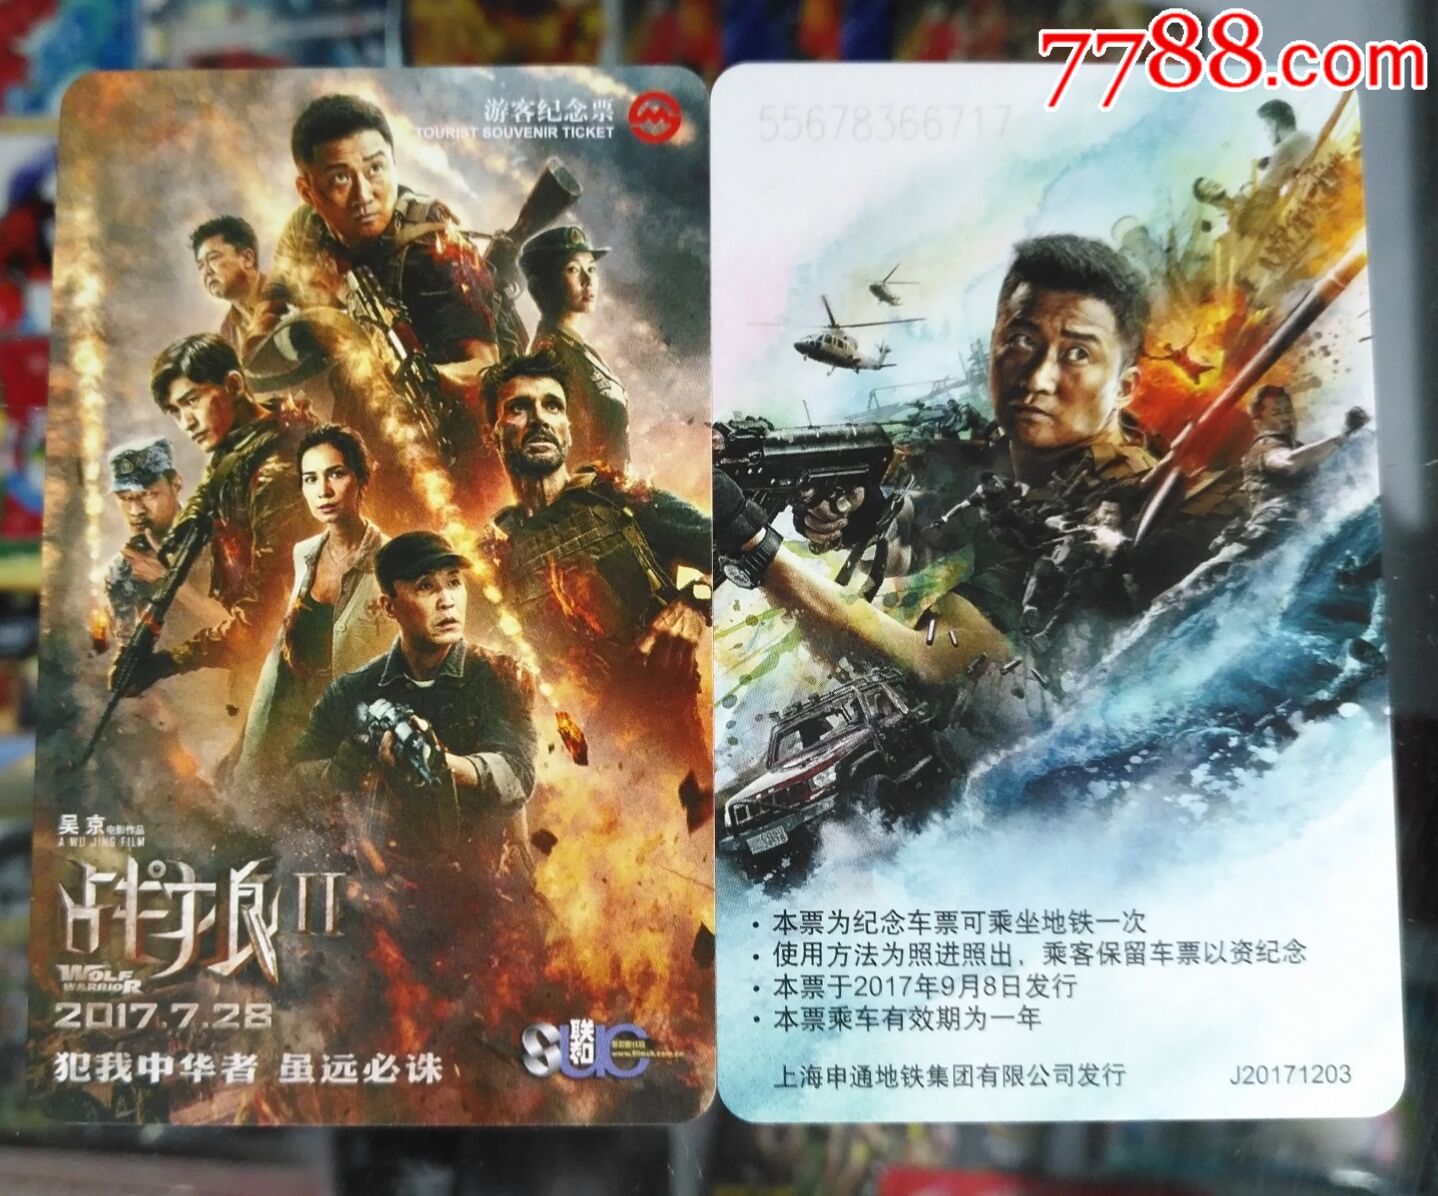 出售上海地铁卡电影海报战狼(2)单枚全品